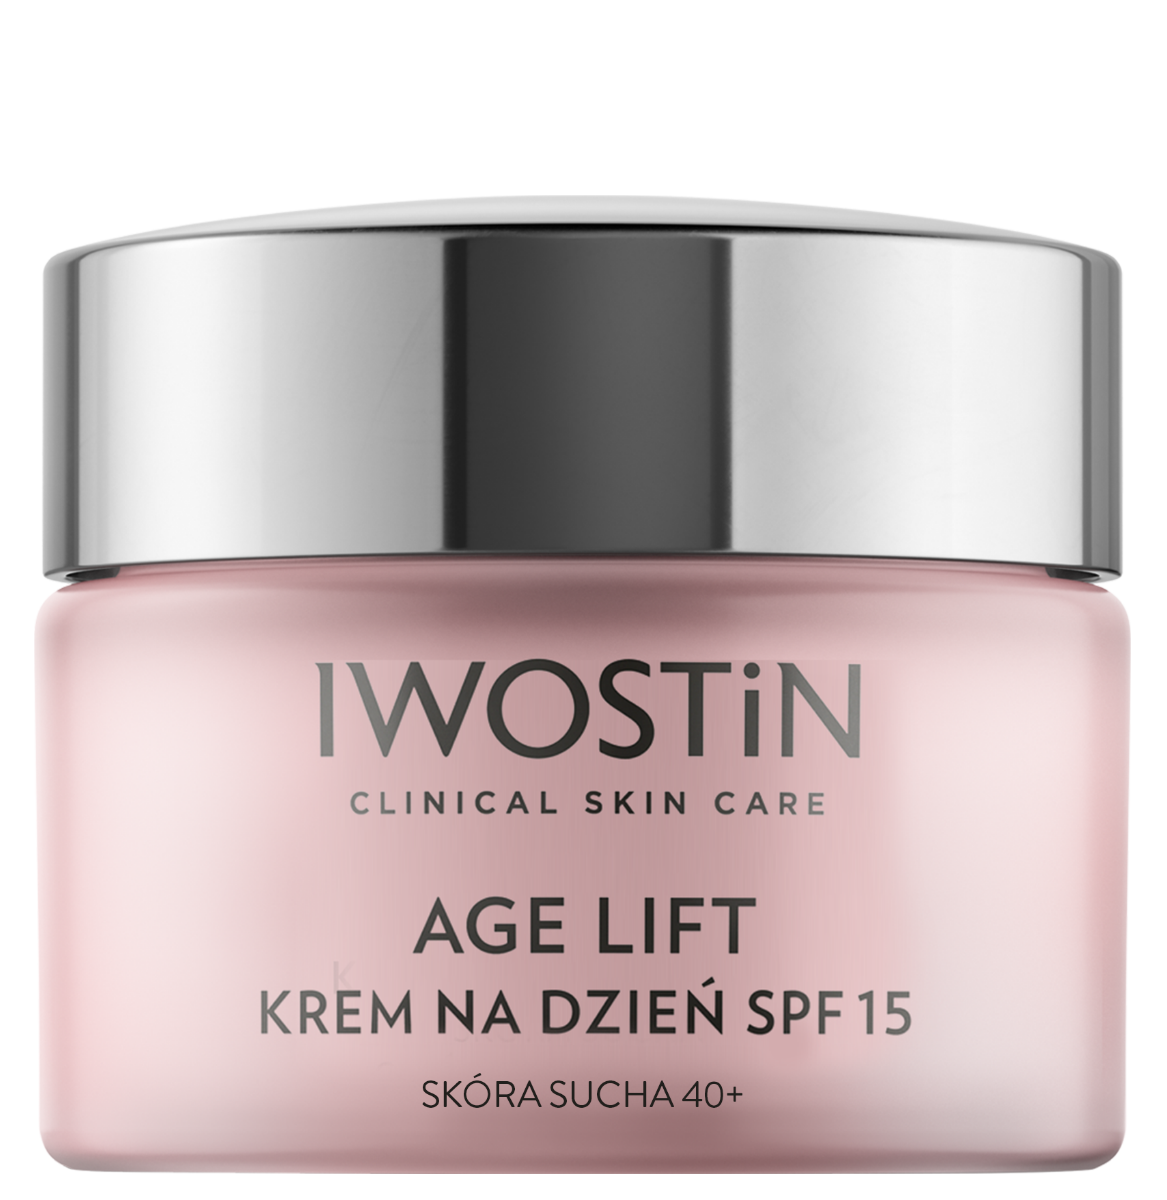 Iwostin Age Lift дневной крем для лица, 50 ml дневной разглаживающий крем age lift